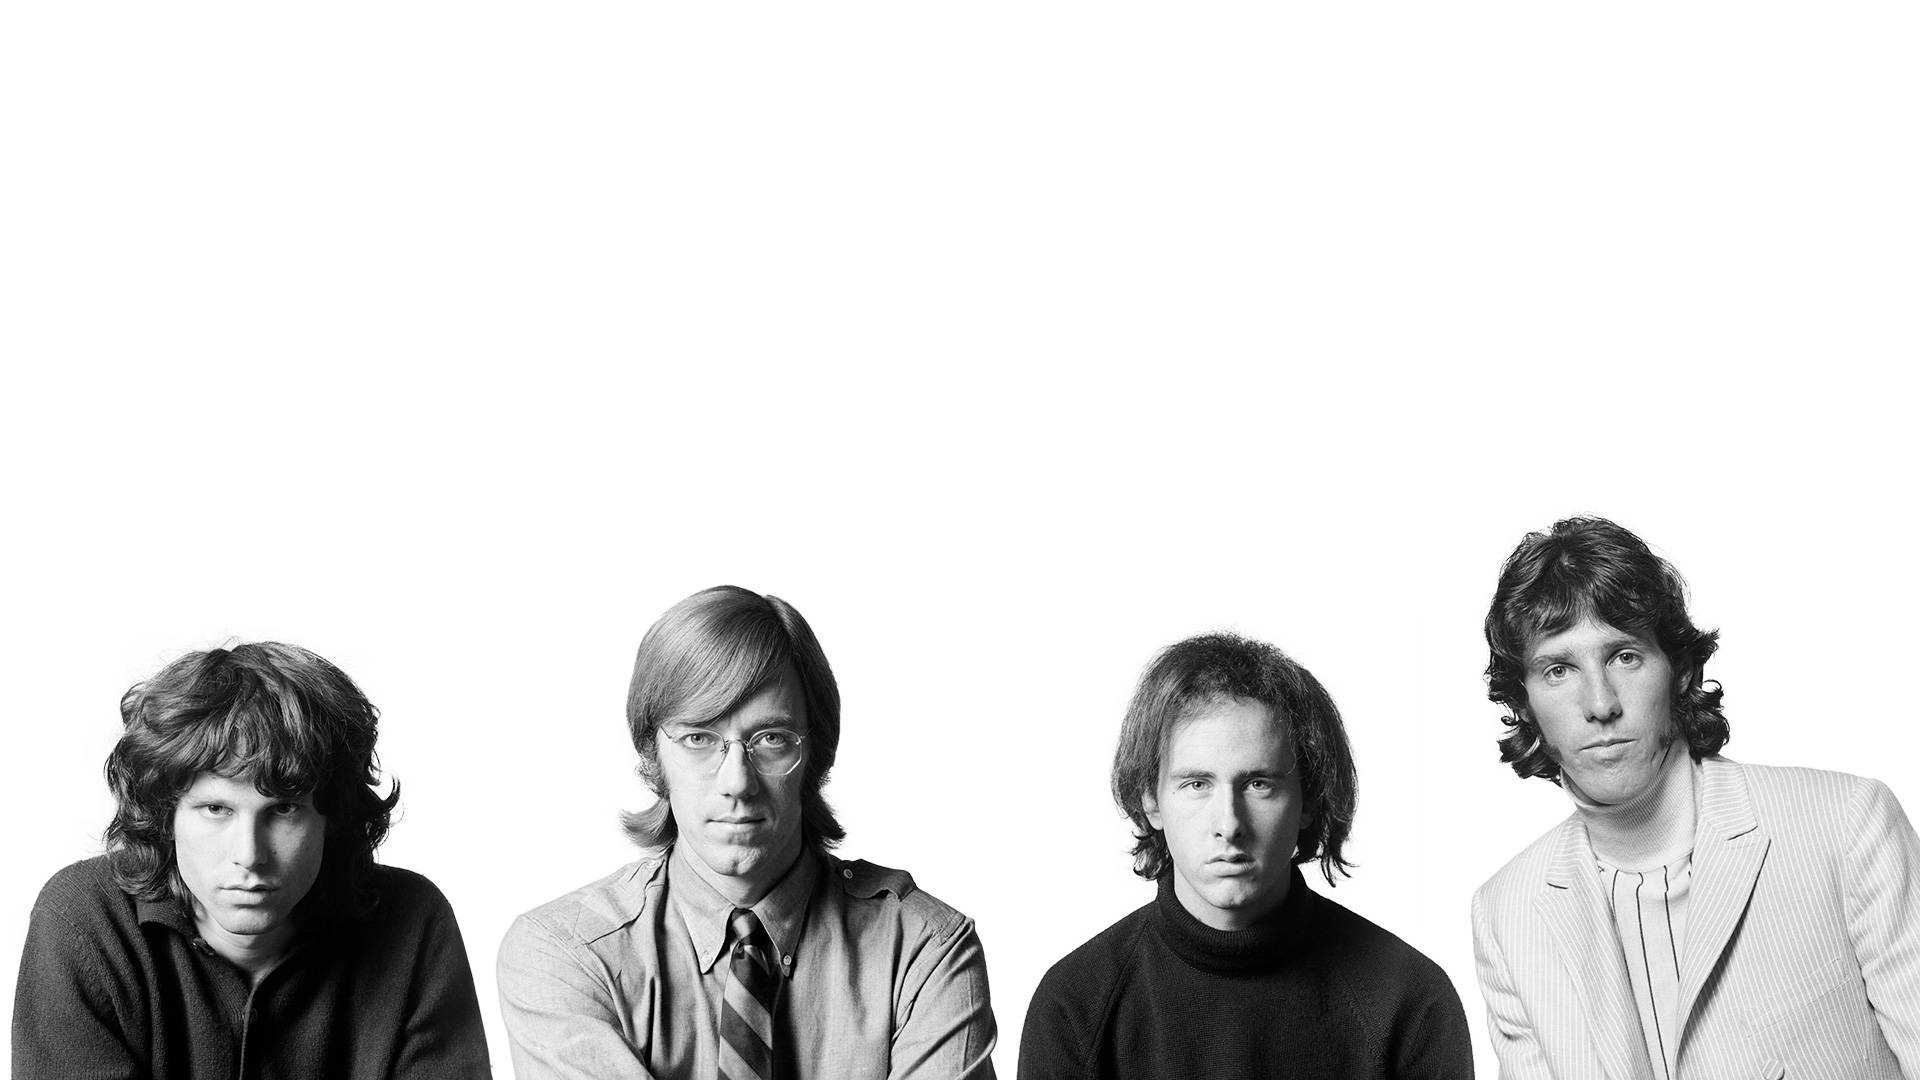 Jim Morrison With Band Members Wallpaper